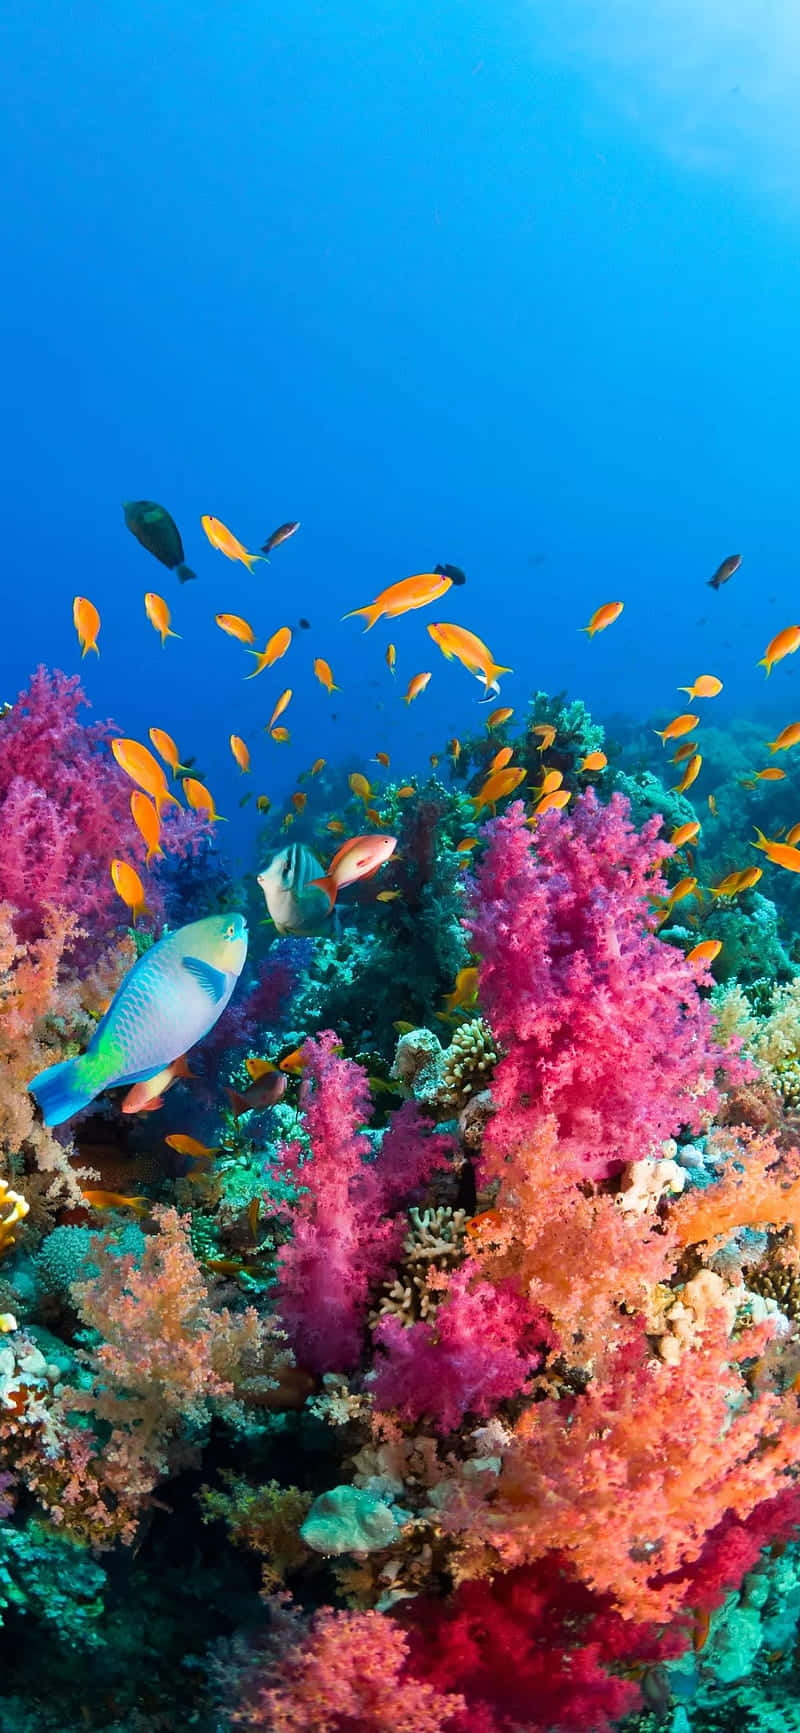 Einbunter Korallenriff Mit Fischen, Die Darin Herumschwimmen. Wallpaper